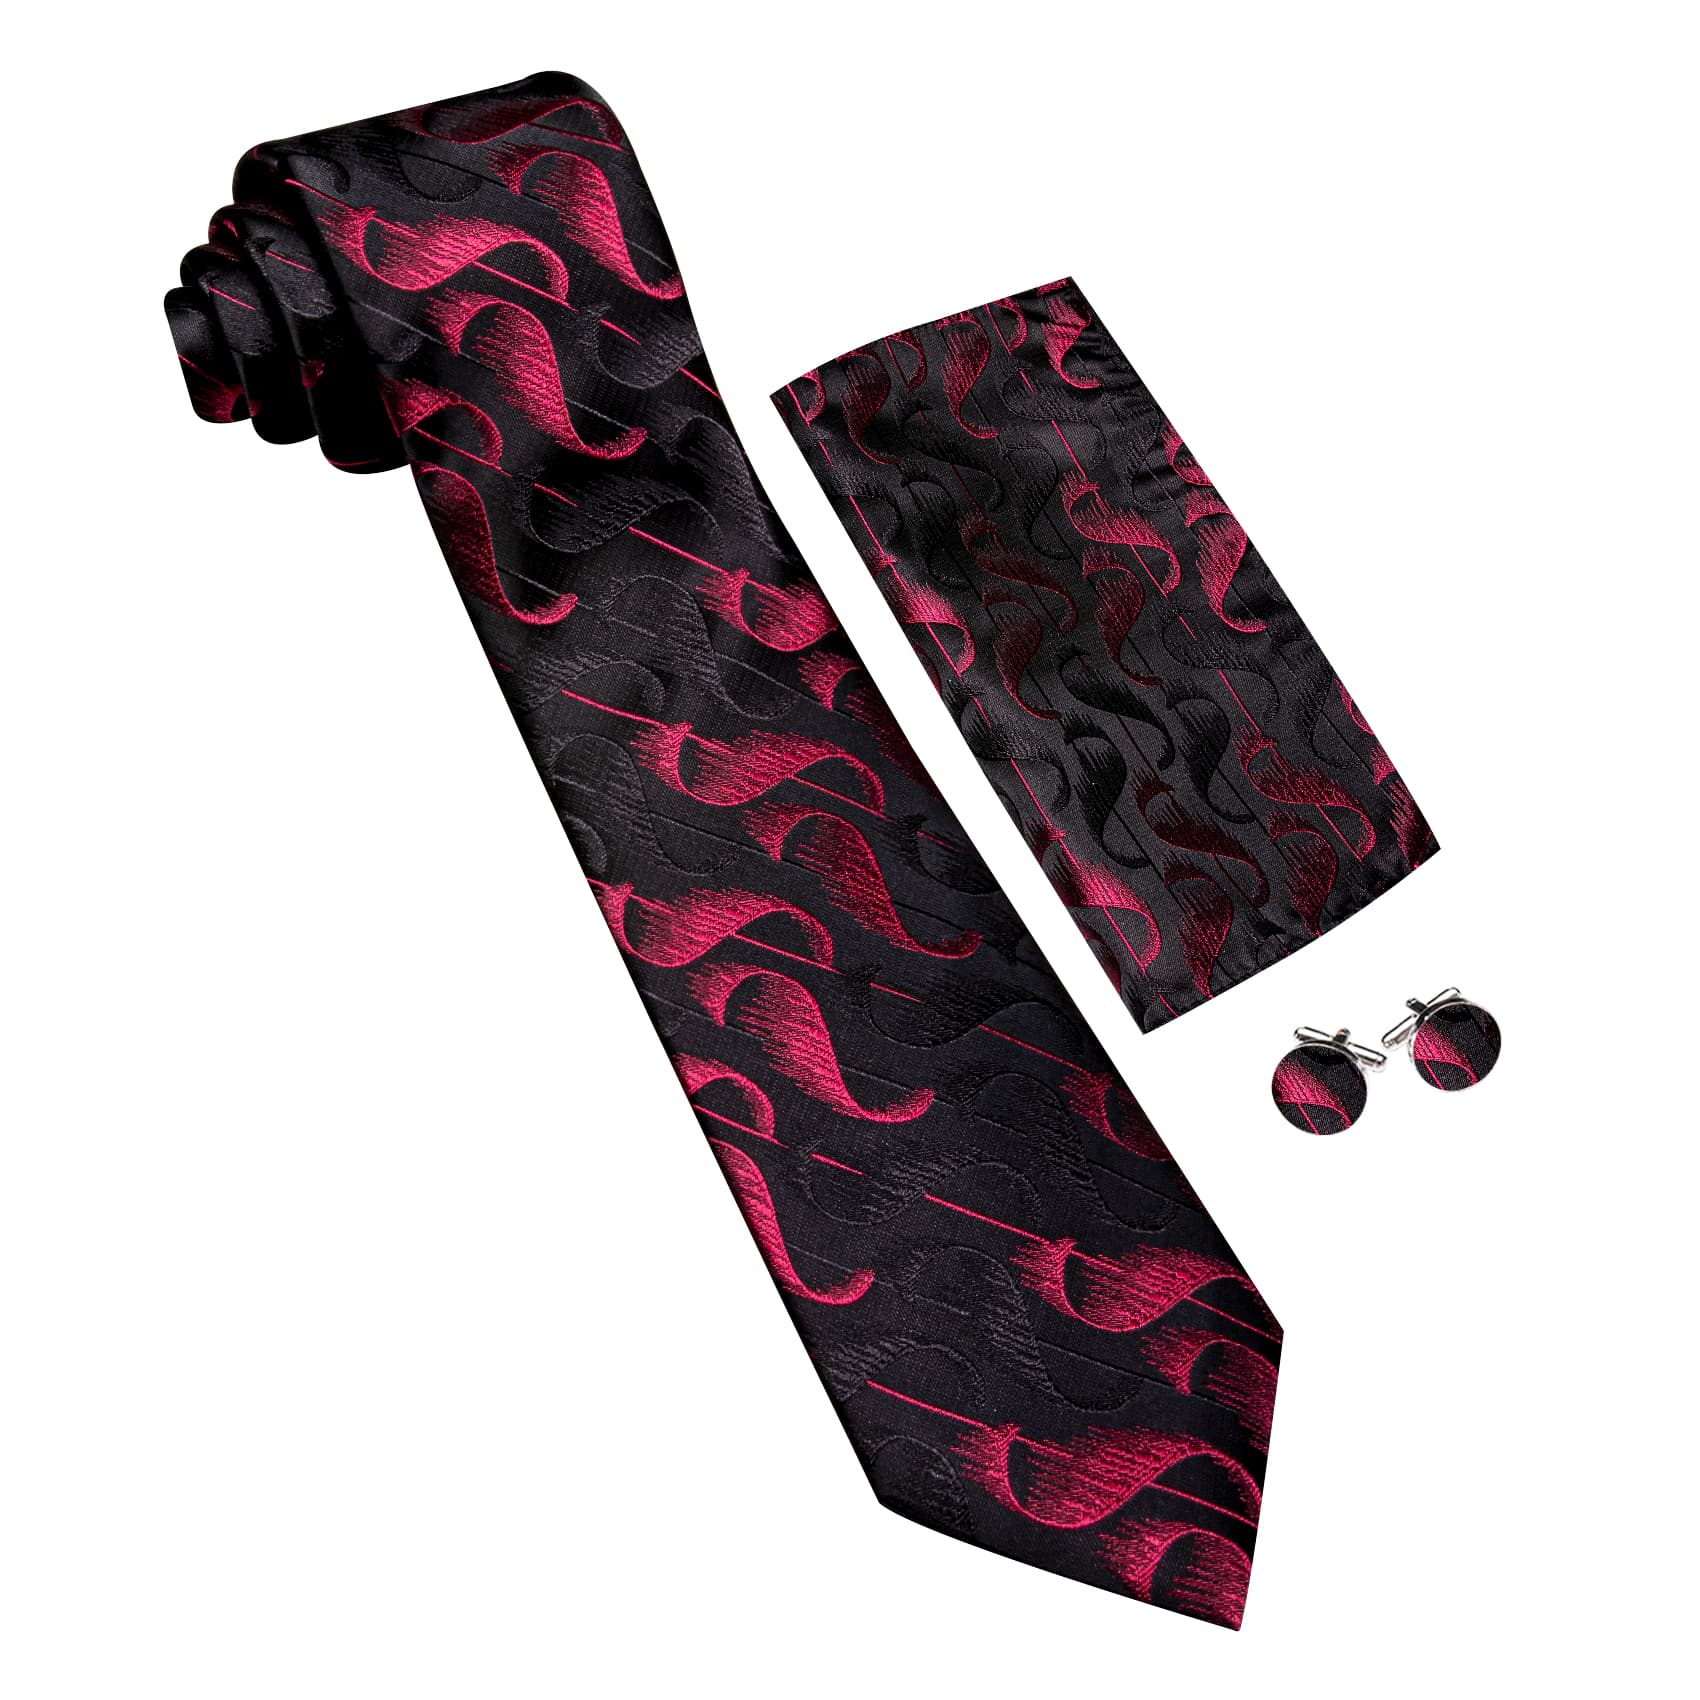 dark red tie